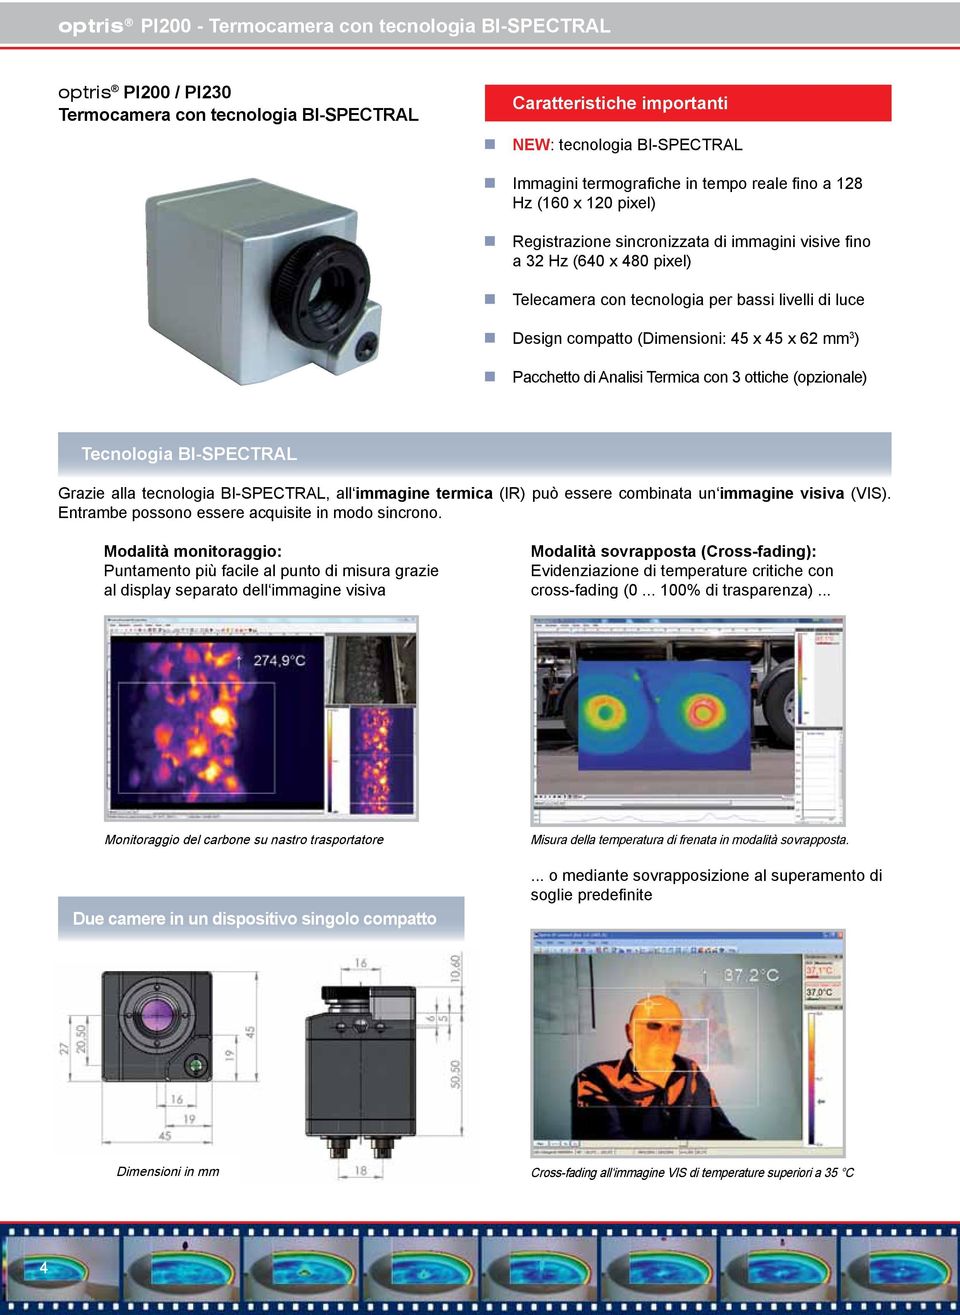 (Dimensioni: 45 x 45 x 62 mm 3 ) Pacchetto di Analisi Termica con 3 ottiche (opzionale) Tecnologia BI-SPECTRAL Grazie alla tecnologia BI-SPECTRAL, all immagine termica (IR) può essere combinata un